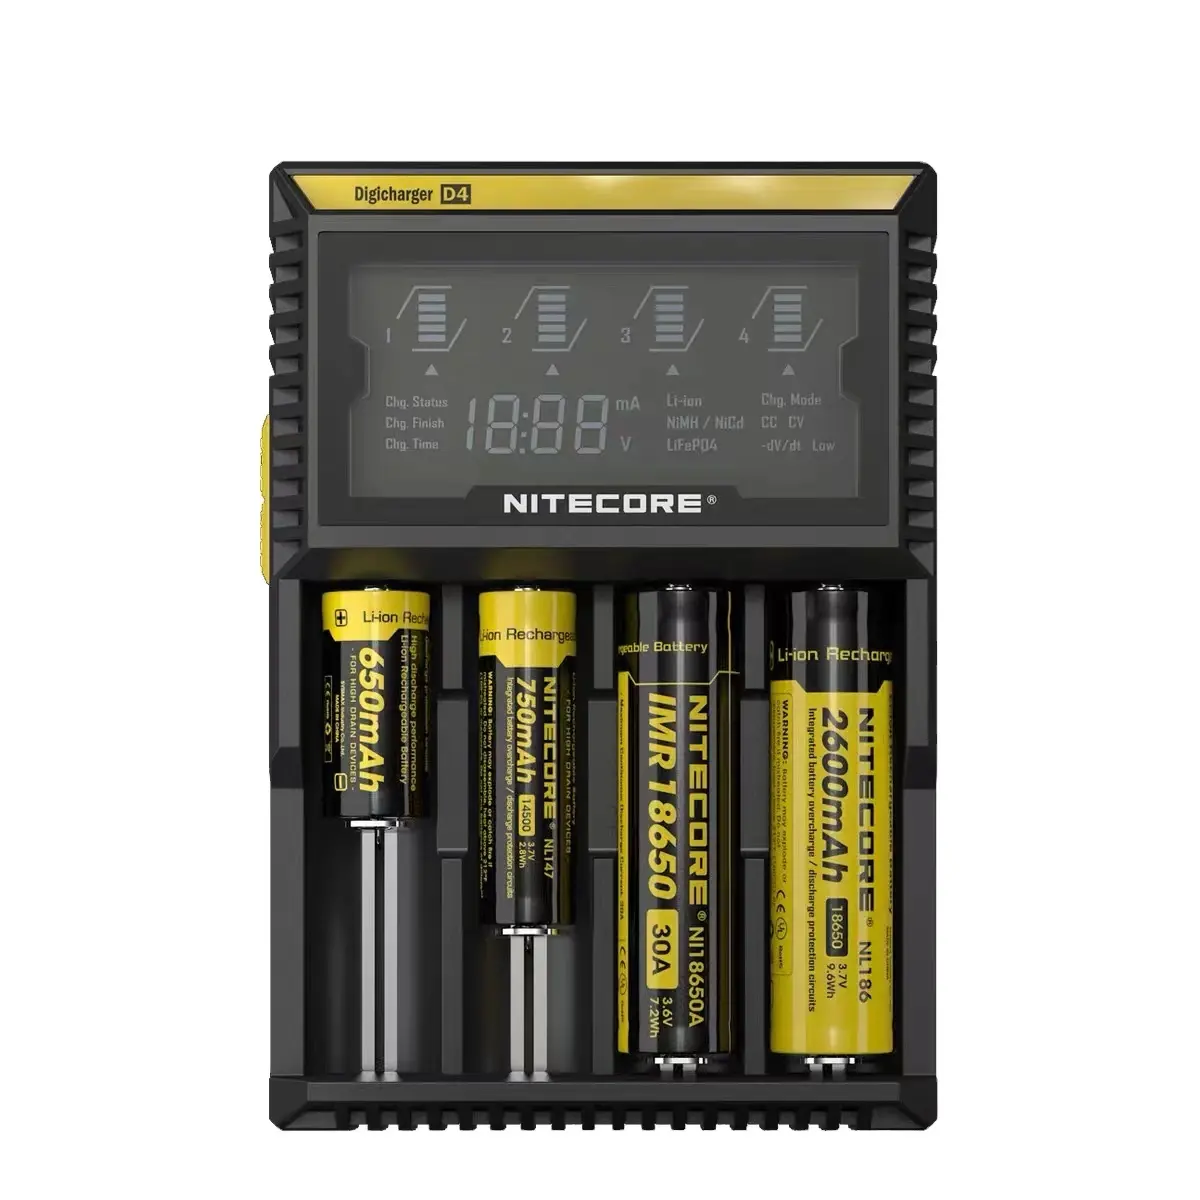 D4 D2 18650 26650 se vendent bien nouveau chargeur de batterie au Lithium de type chargeur intelligent avec affichage